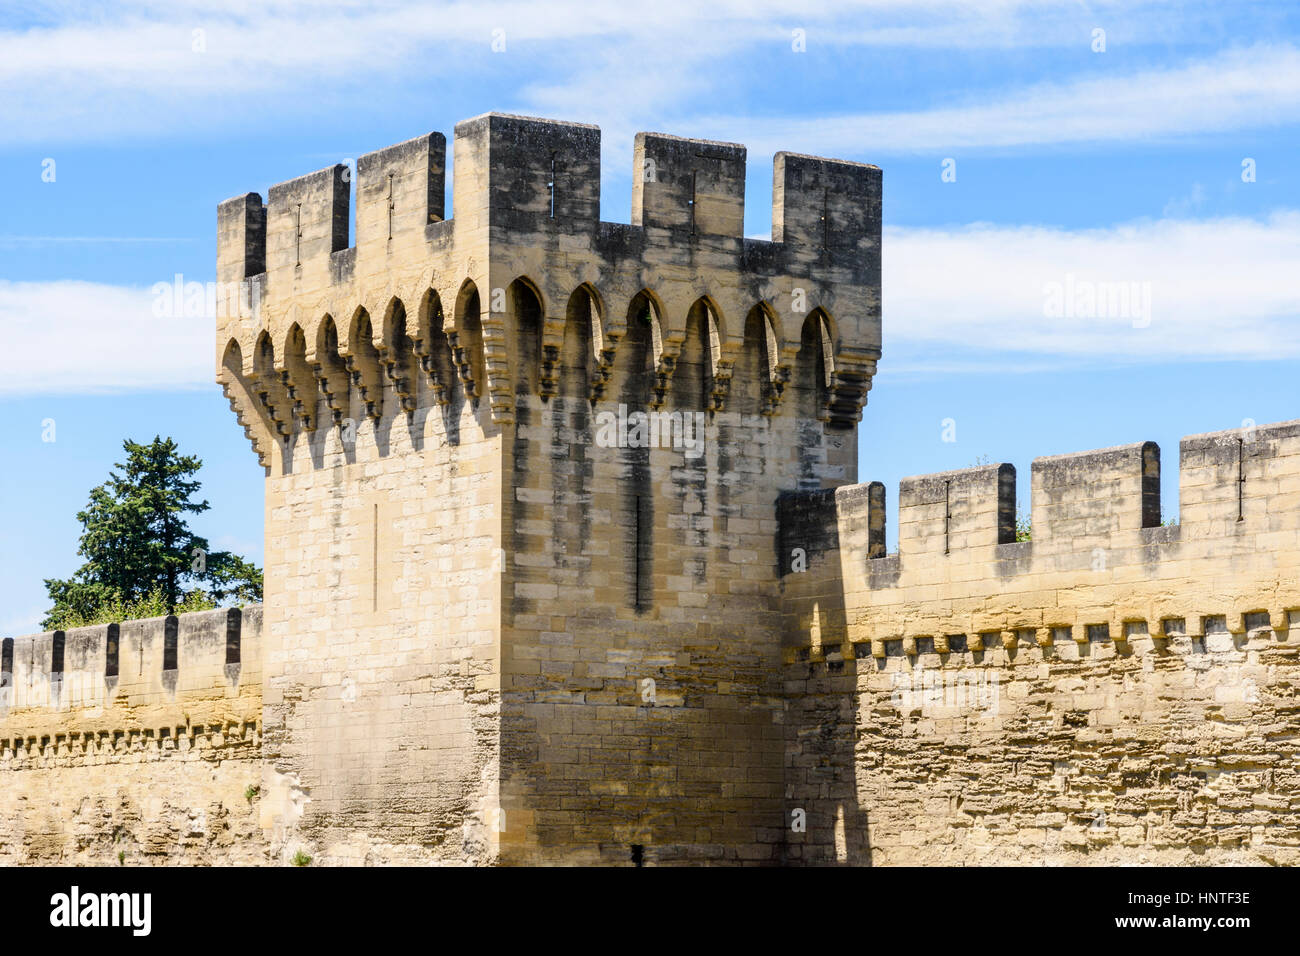 La tour de défense, une partie de la section sud des remparts de la ville médiévale fortifiée d'Avignon, France Banque D'Images